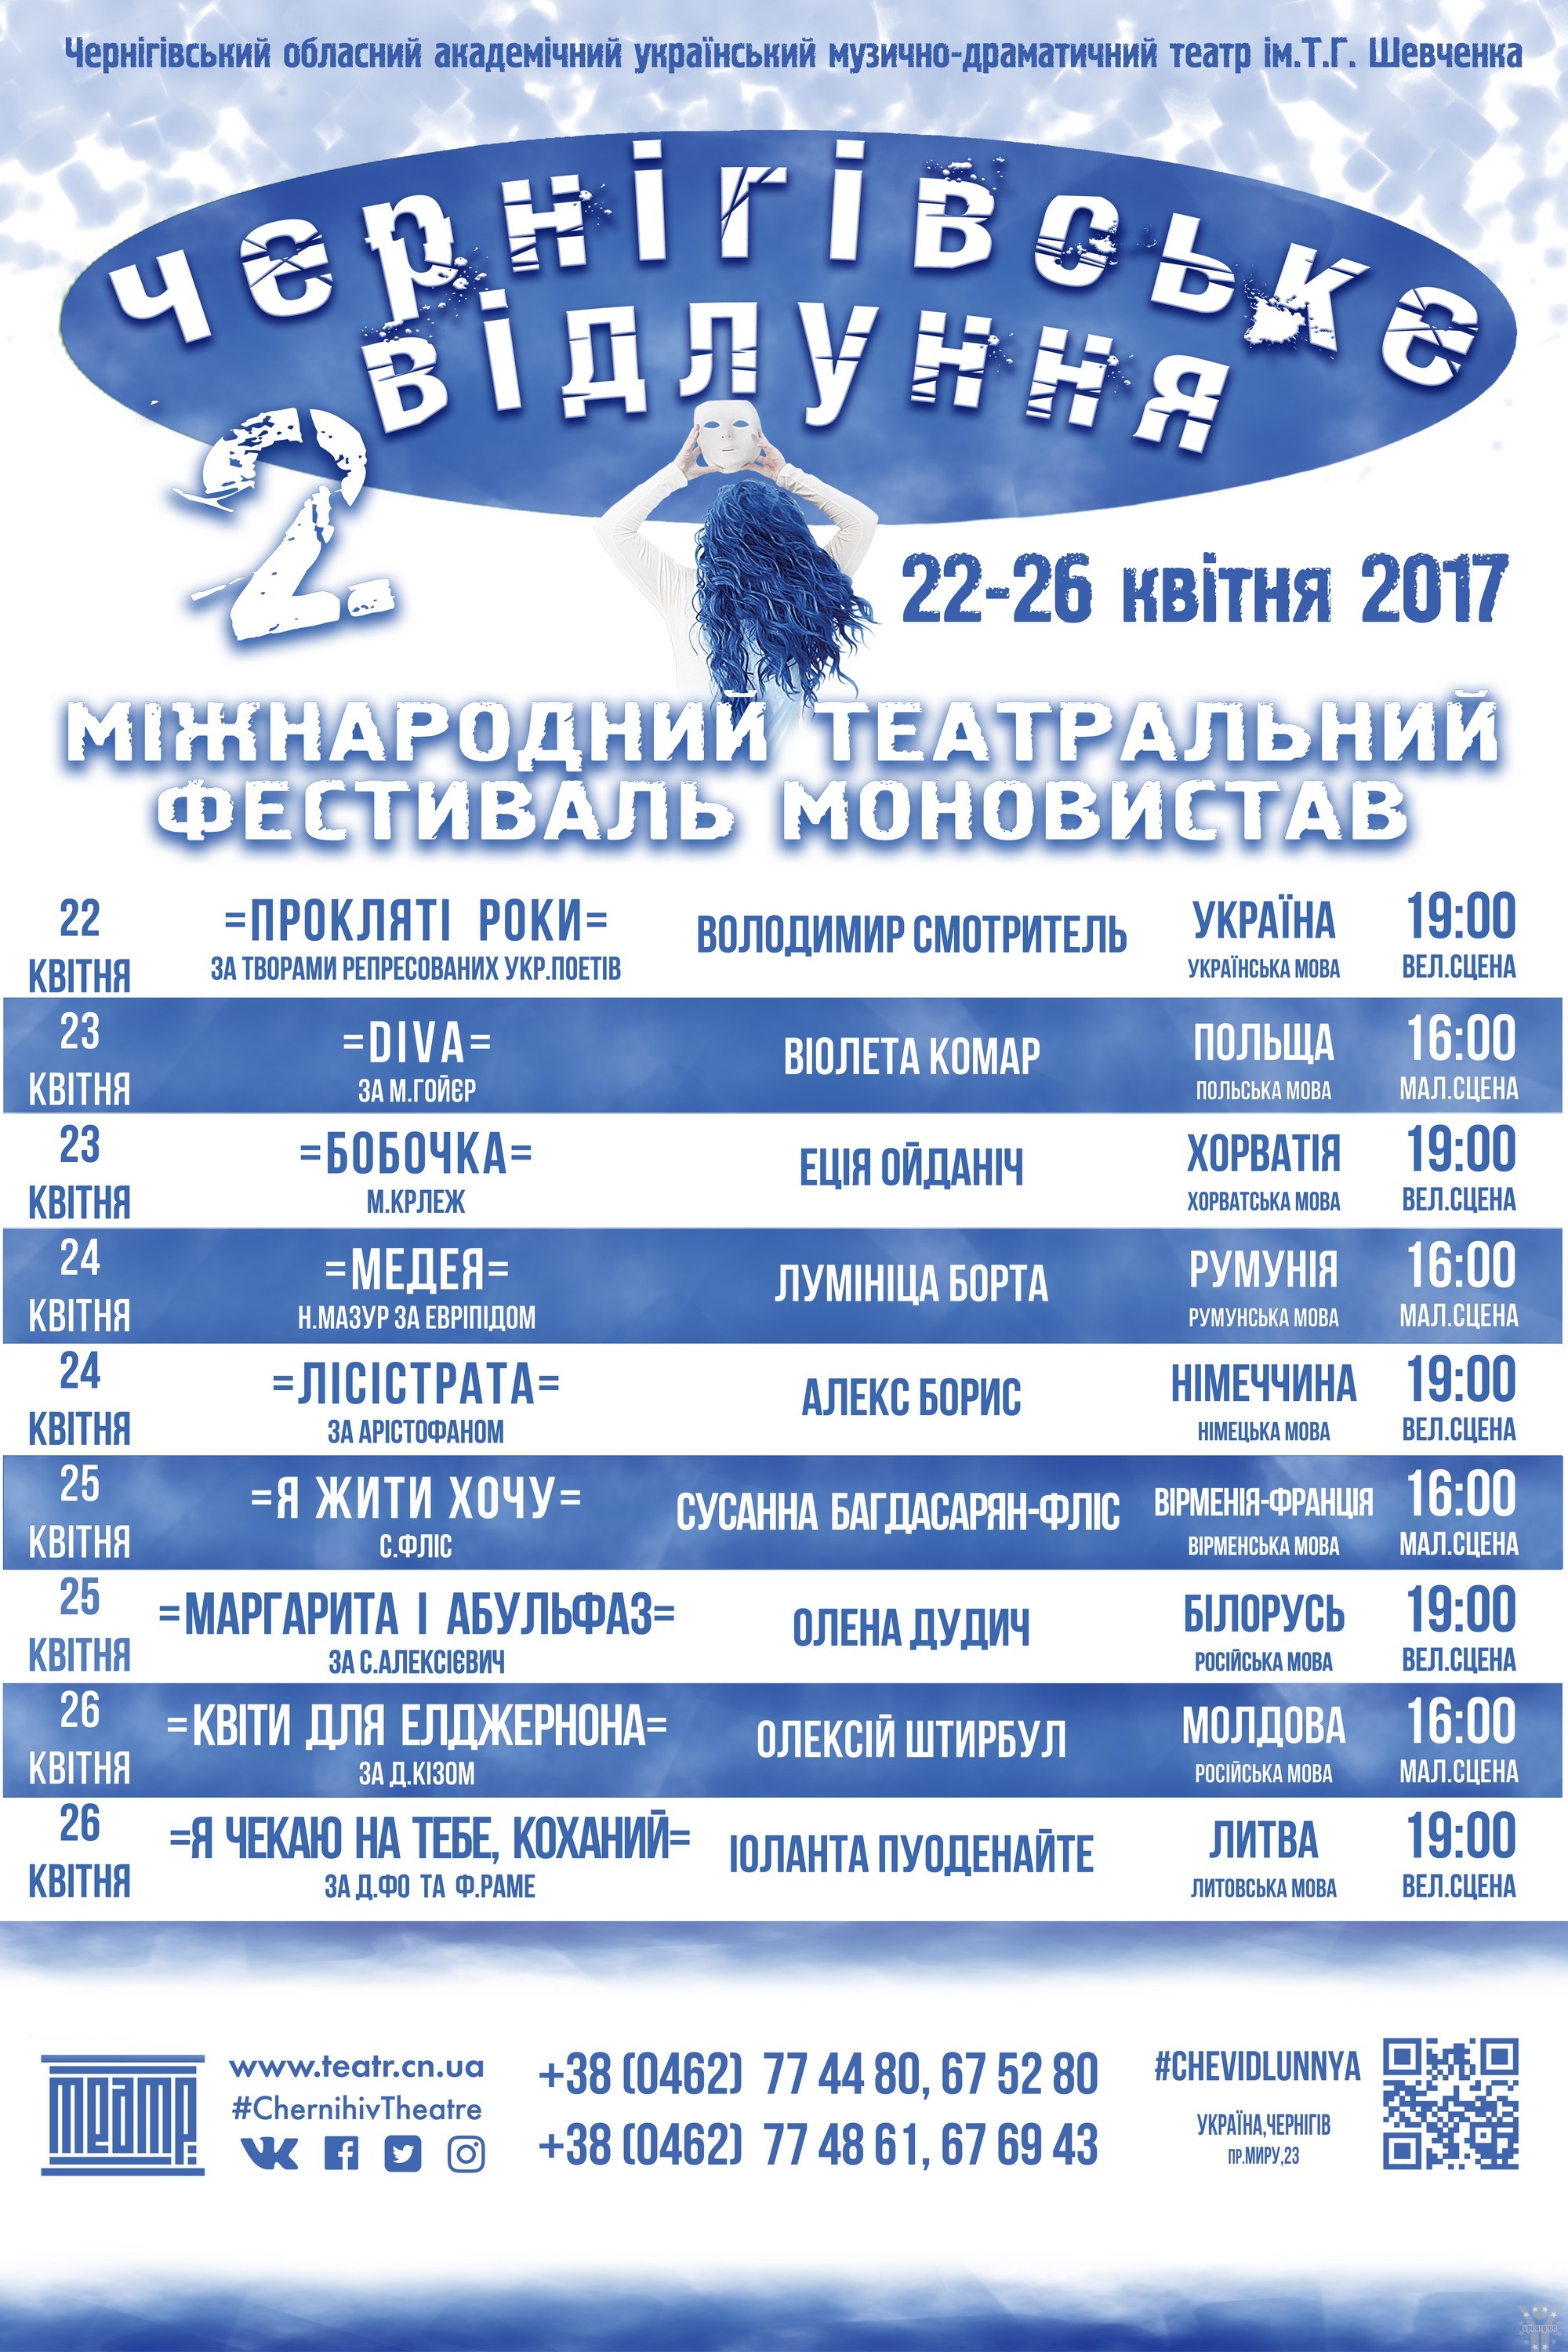 Запрошуємо на Міжнародний фестиваль моновистав «Чернігівське відлуння»!